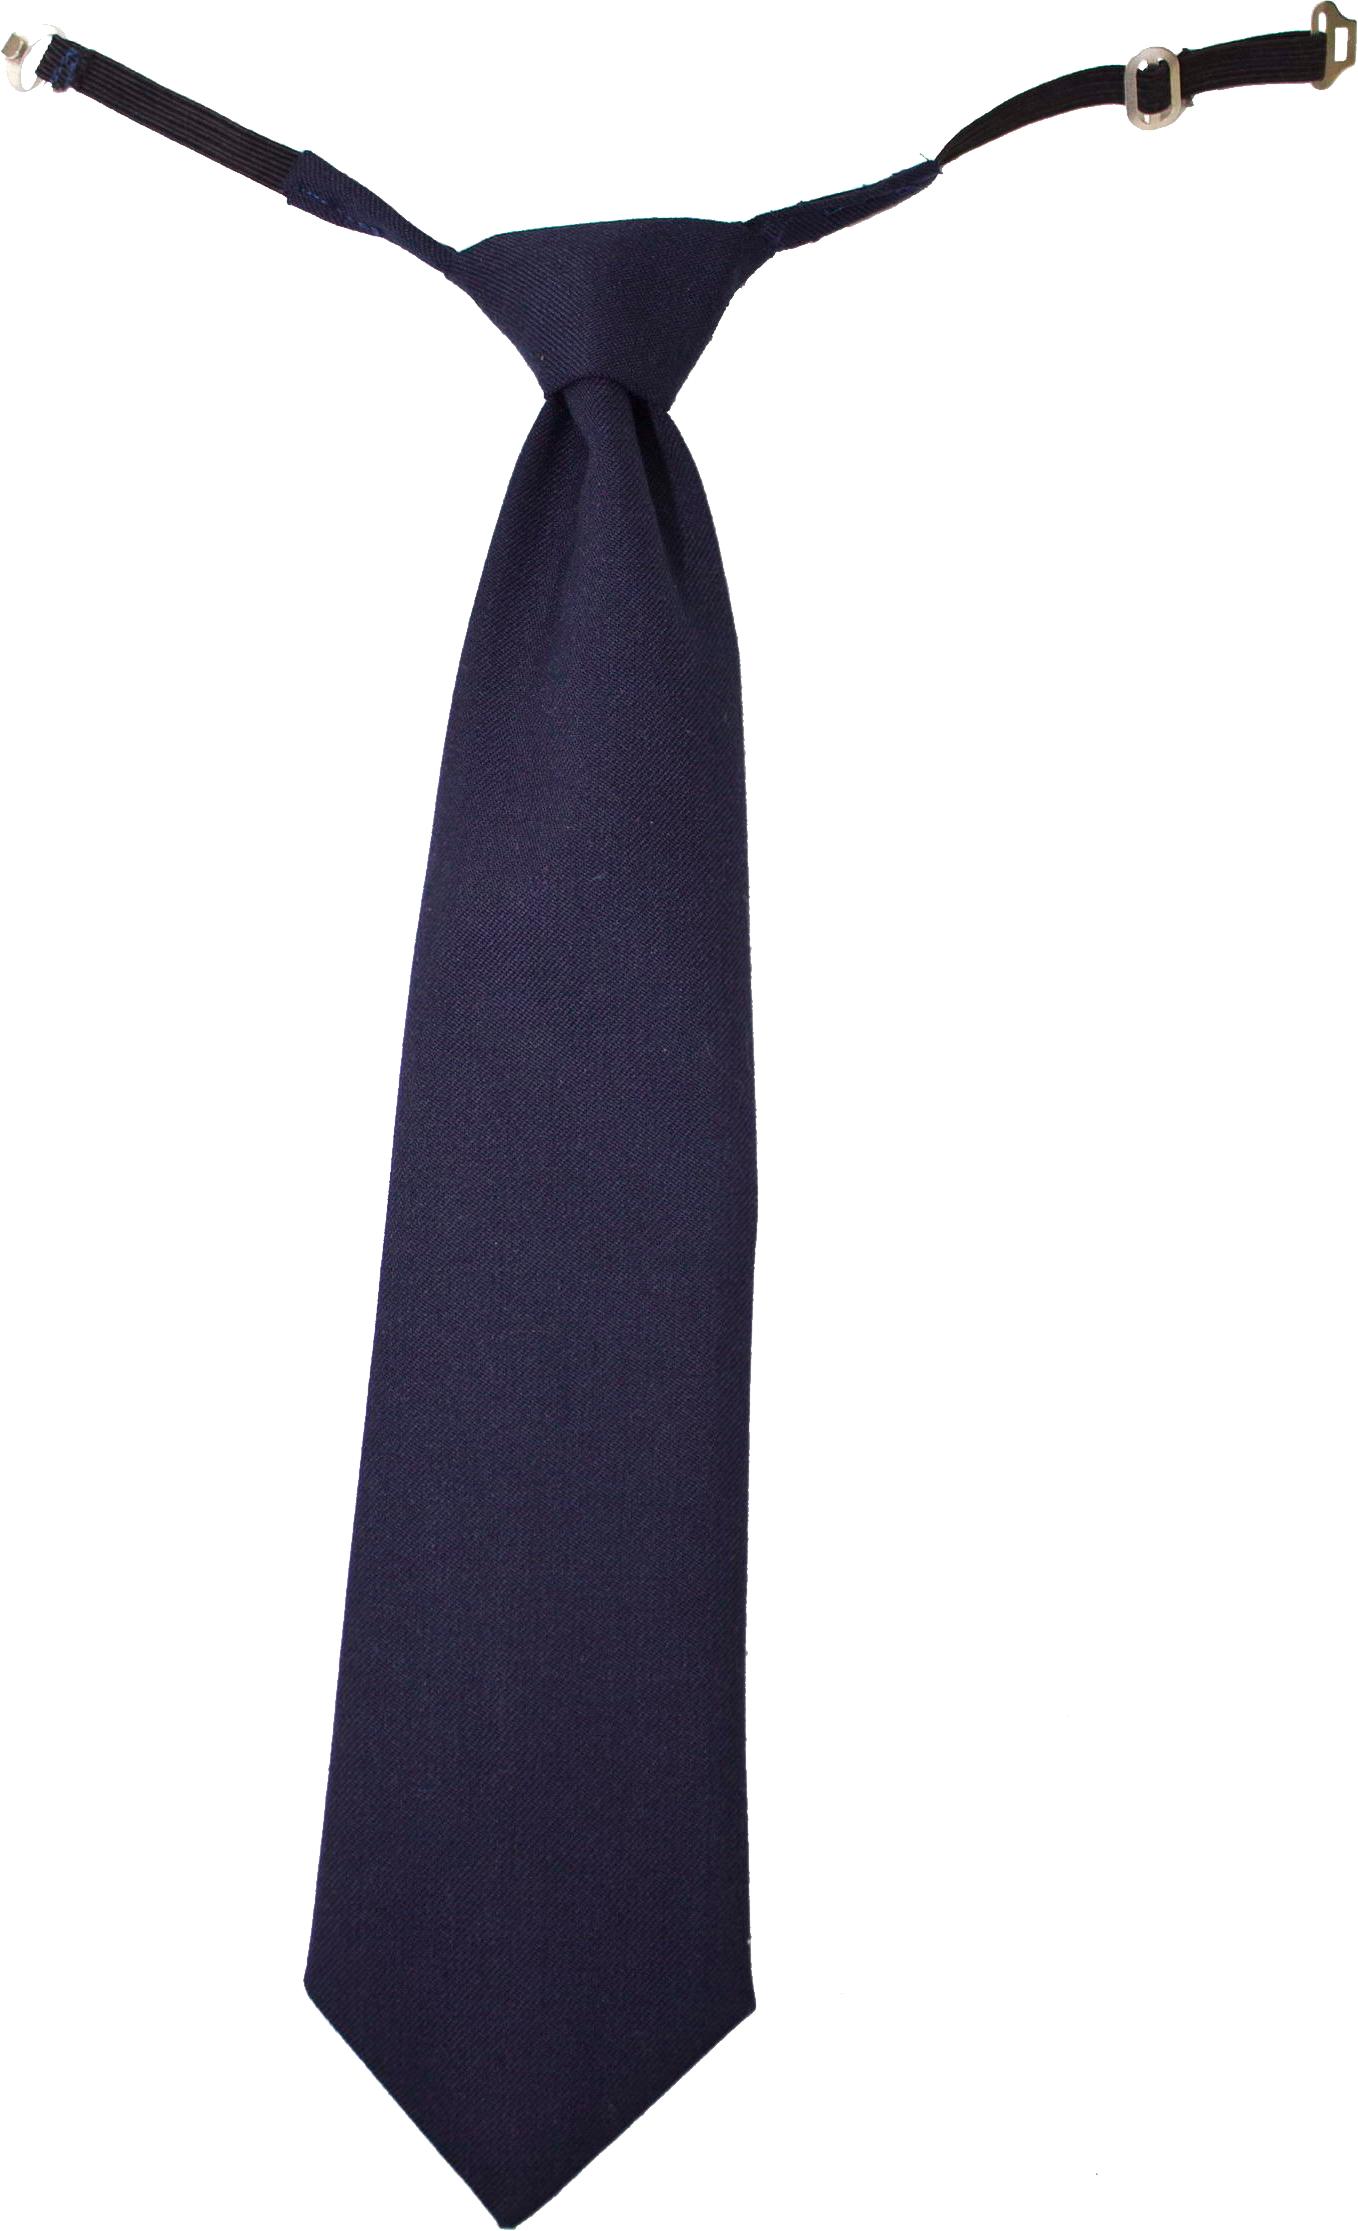 clipart of men's ties - photo #22